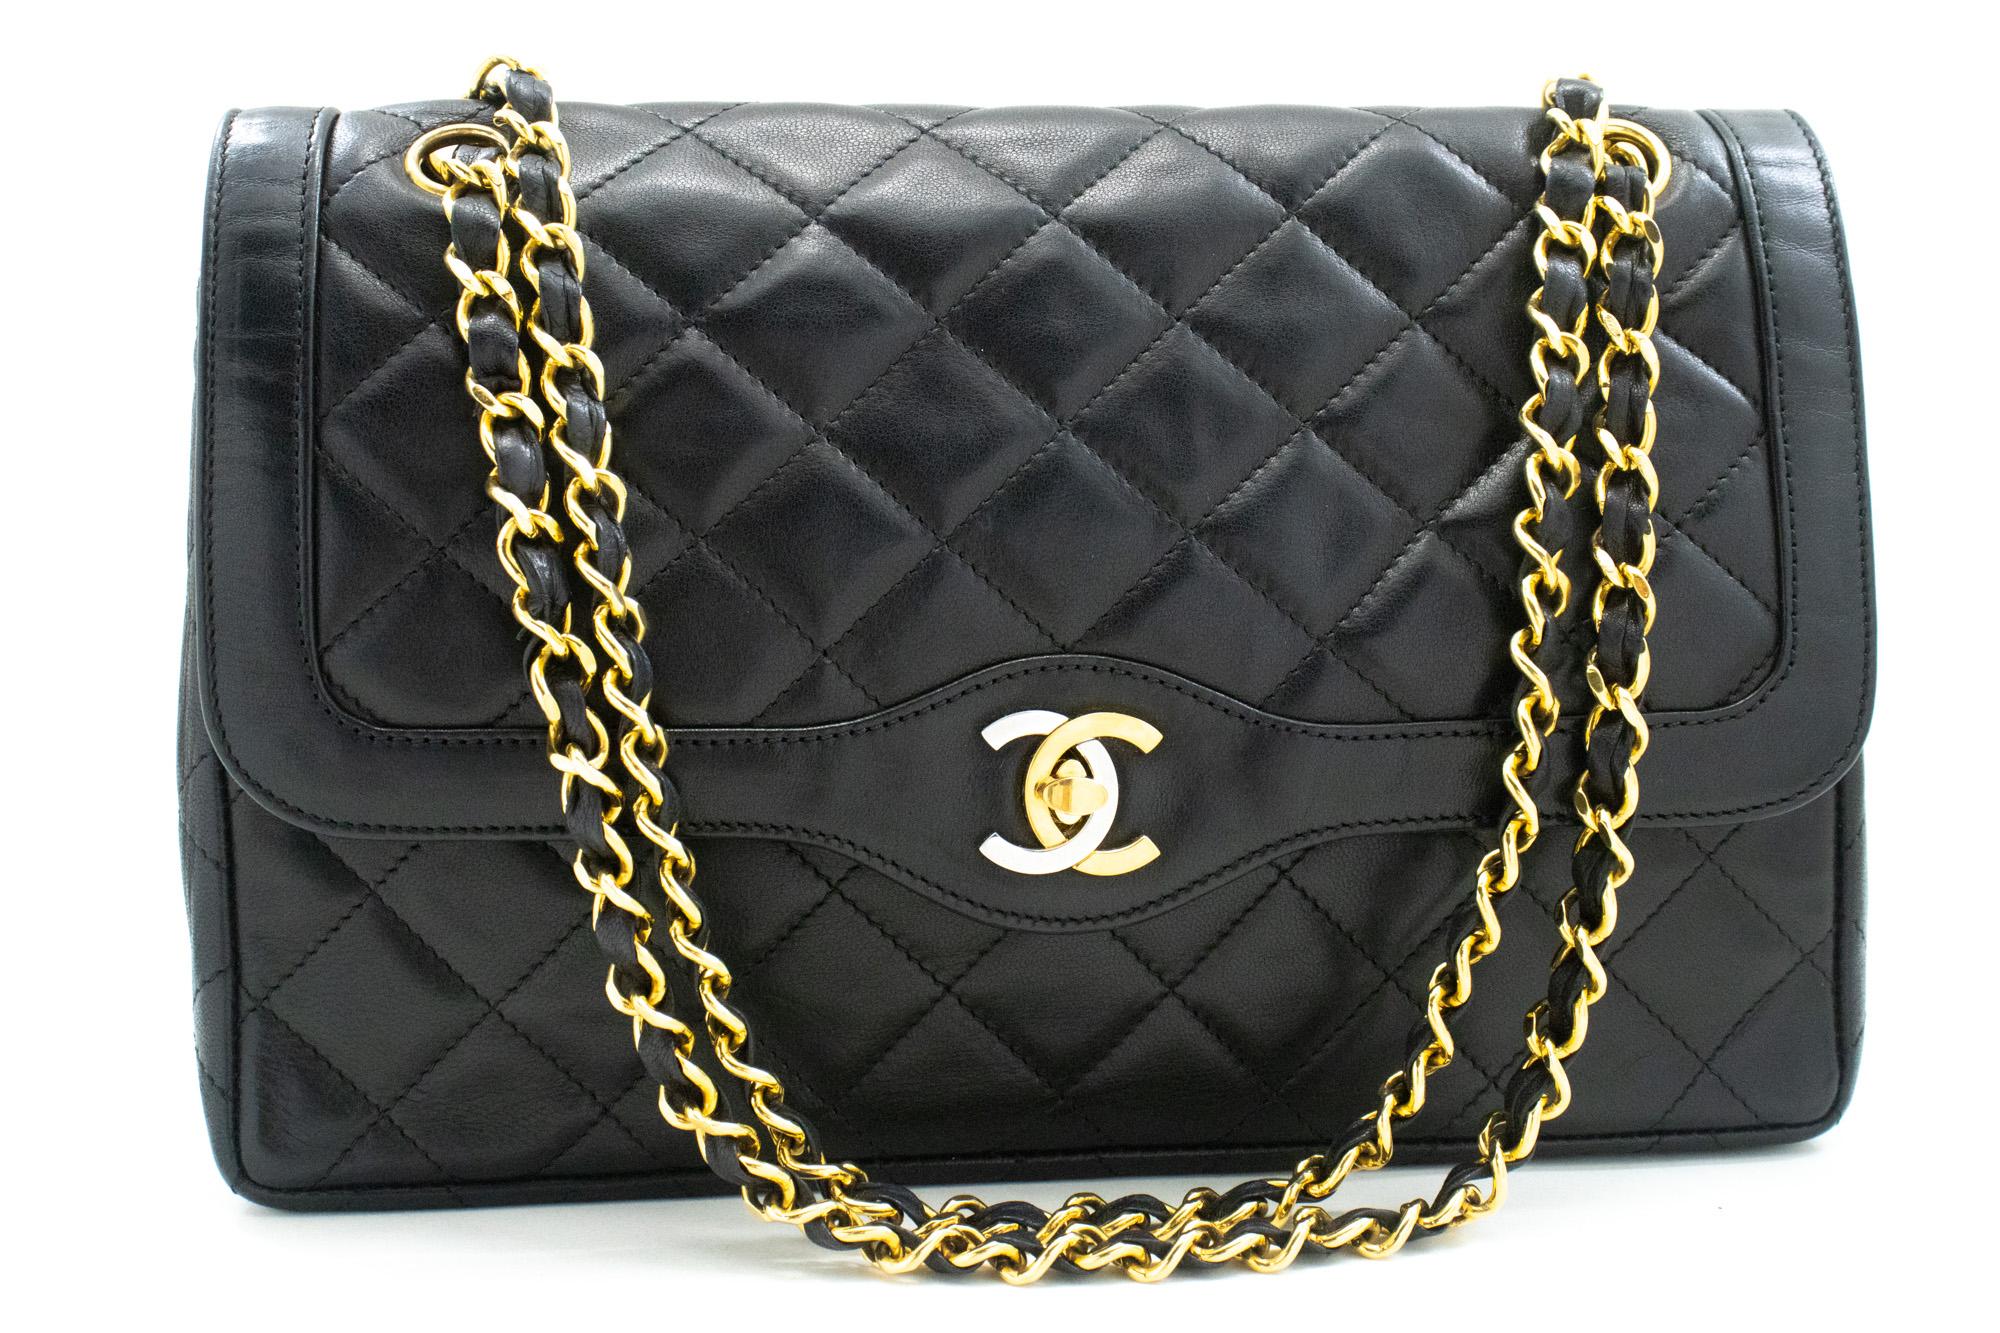 Un authentique sac à bandoulière CHANEL Paris Limited Chain Black Quilted Double Flap. La couleur est noire. Le matériau extérieur est le cuir. Le motif est solide. Cet article est un Vintage / Classique. L'année de fabrication serait